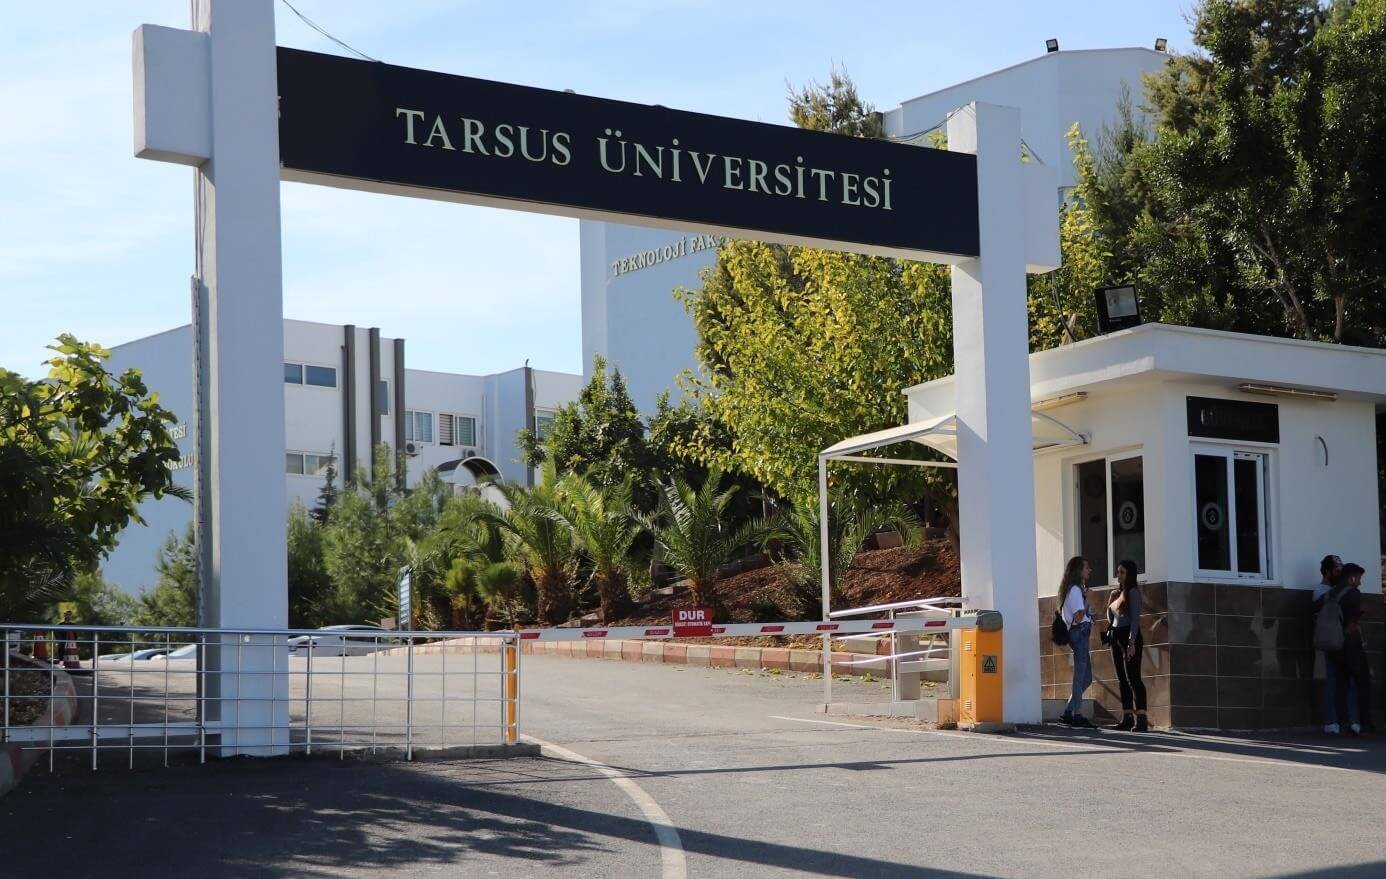 tarsus universitesi find and study 5 - Tarsus Üniversitesi